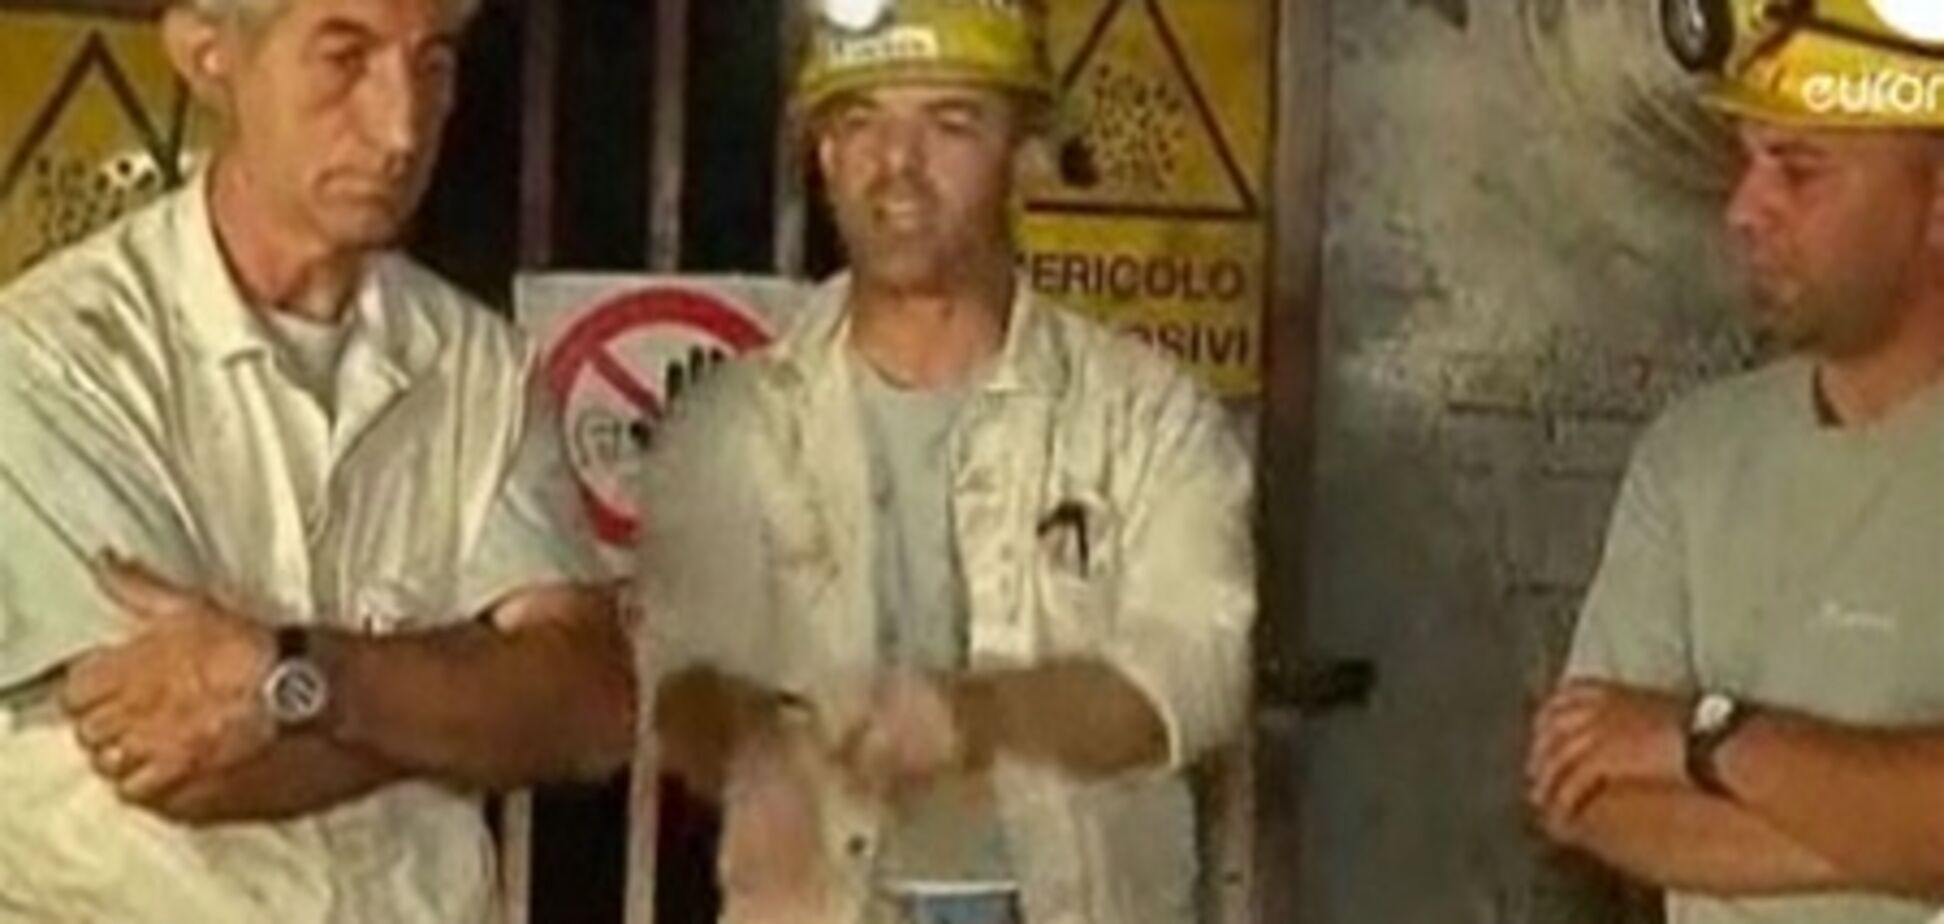 Итальянский шахтёр вскрыл себе вены перед телекамерами